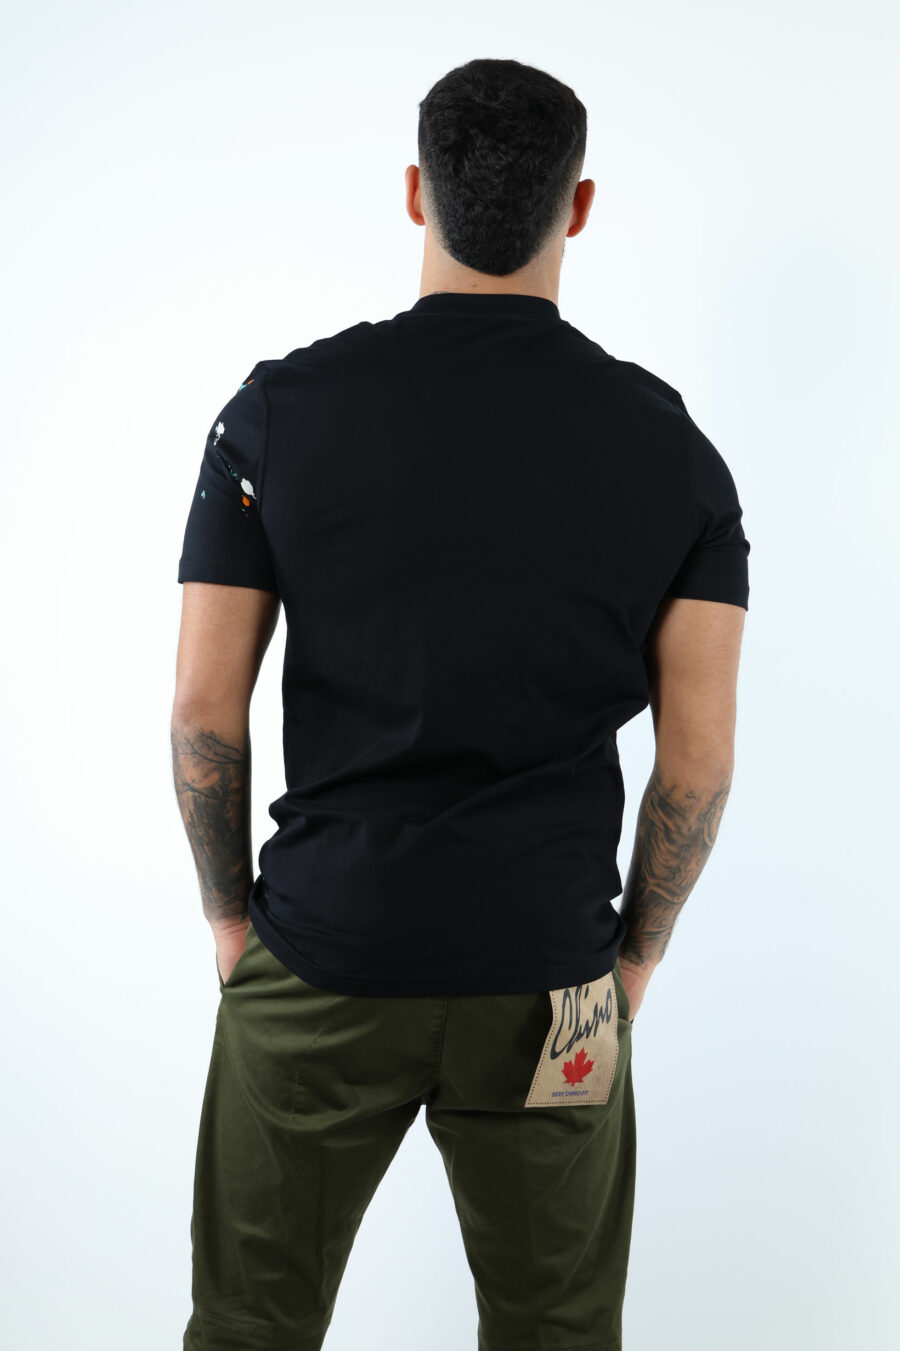 Schwarzes T-Shirt mit Maxilogo "couture milano" mit mehrfarbigem "splash" - 107054